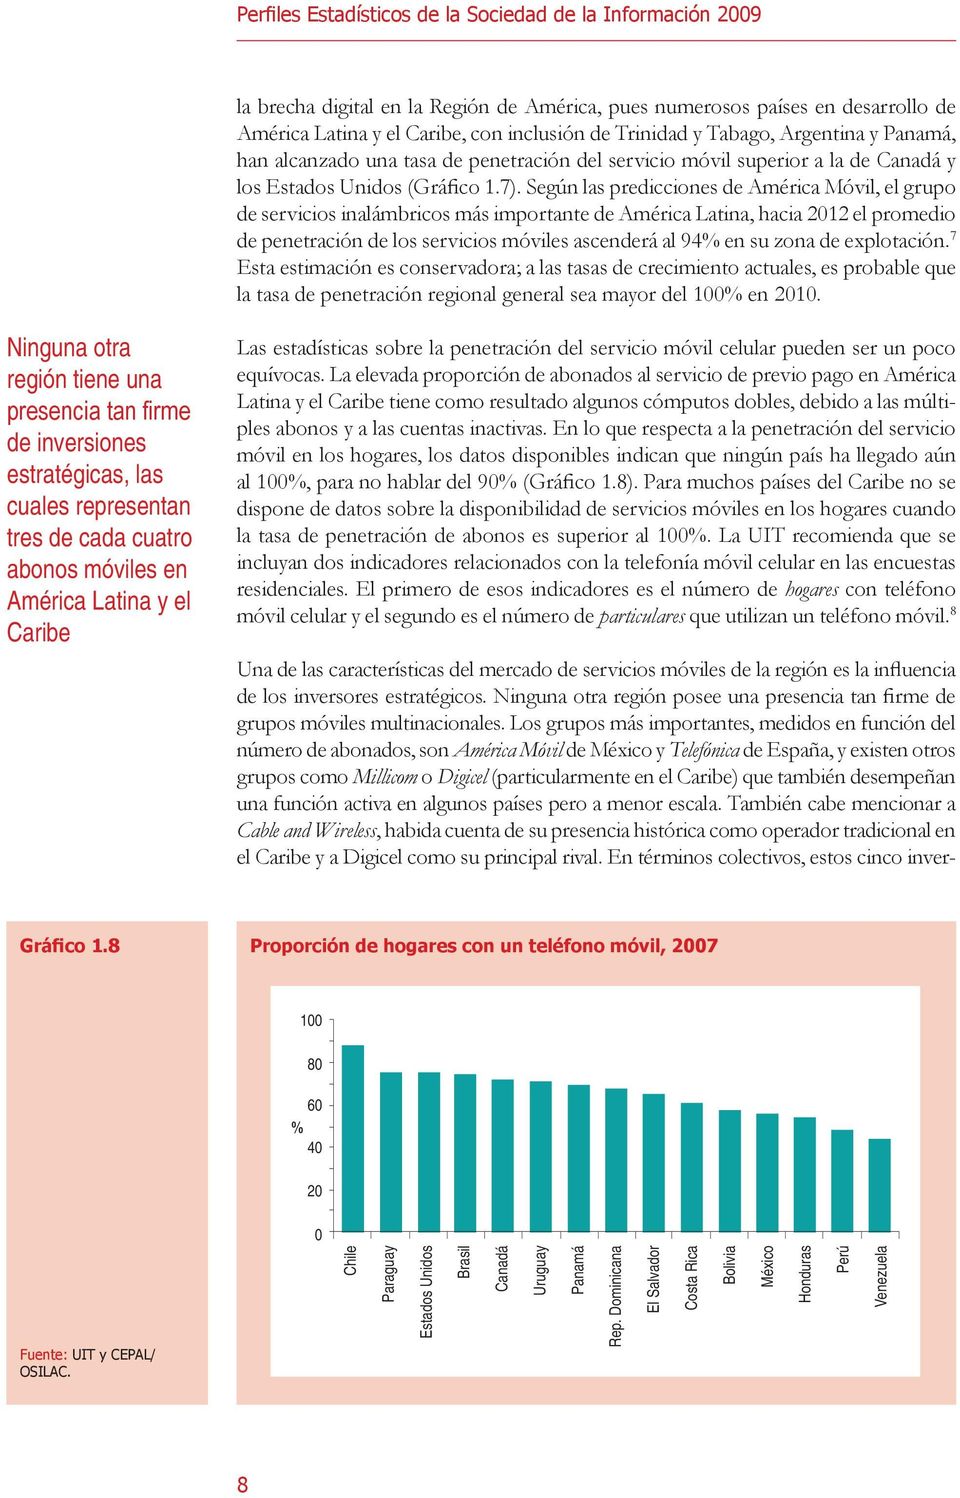 Según las predicciones de América Móvil, el grupo de servicios inalámbricos más importante de América Latina, hacia 2012 el promedio de penetración de los servicios móviles ascenderá al 94% en su